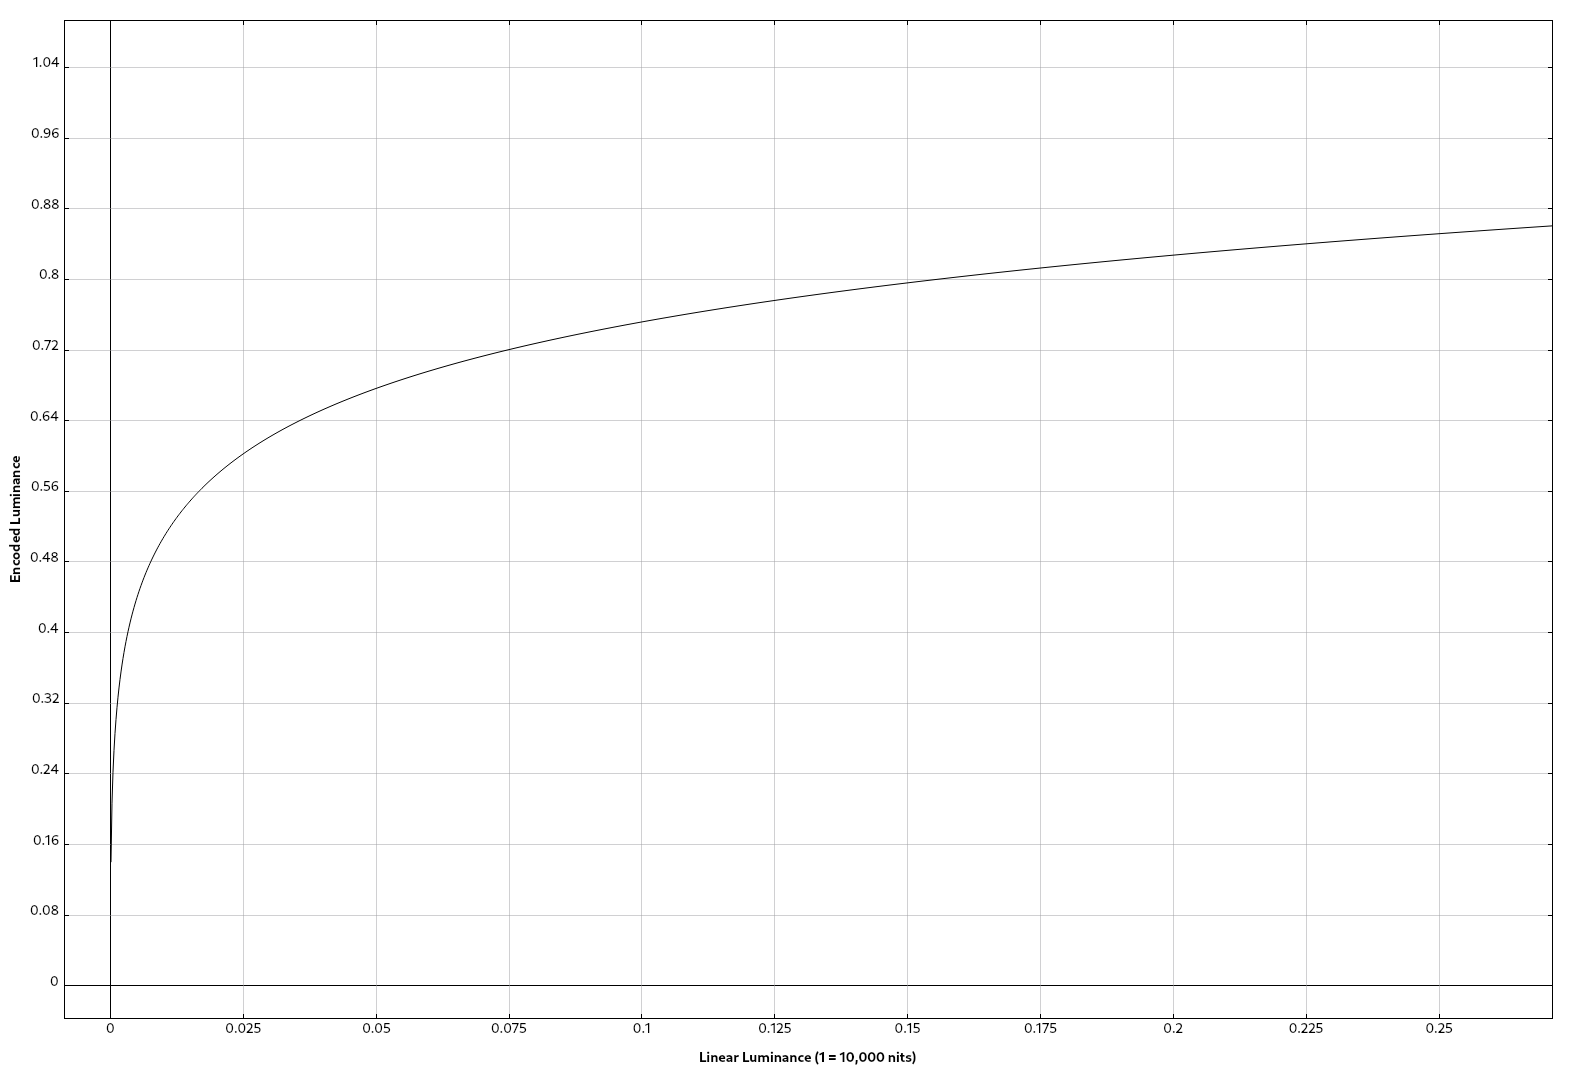 Part of the Perceptual Quantizer curve